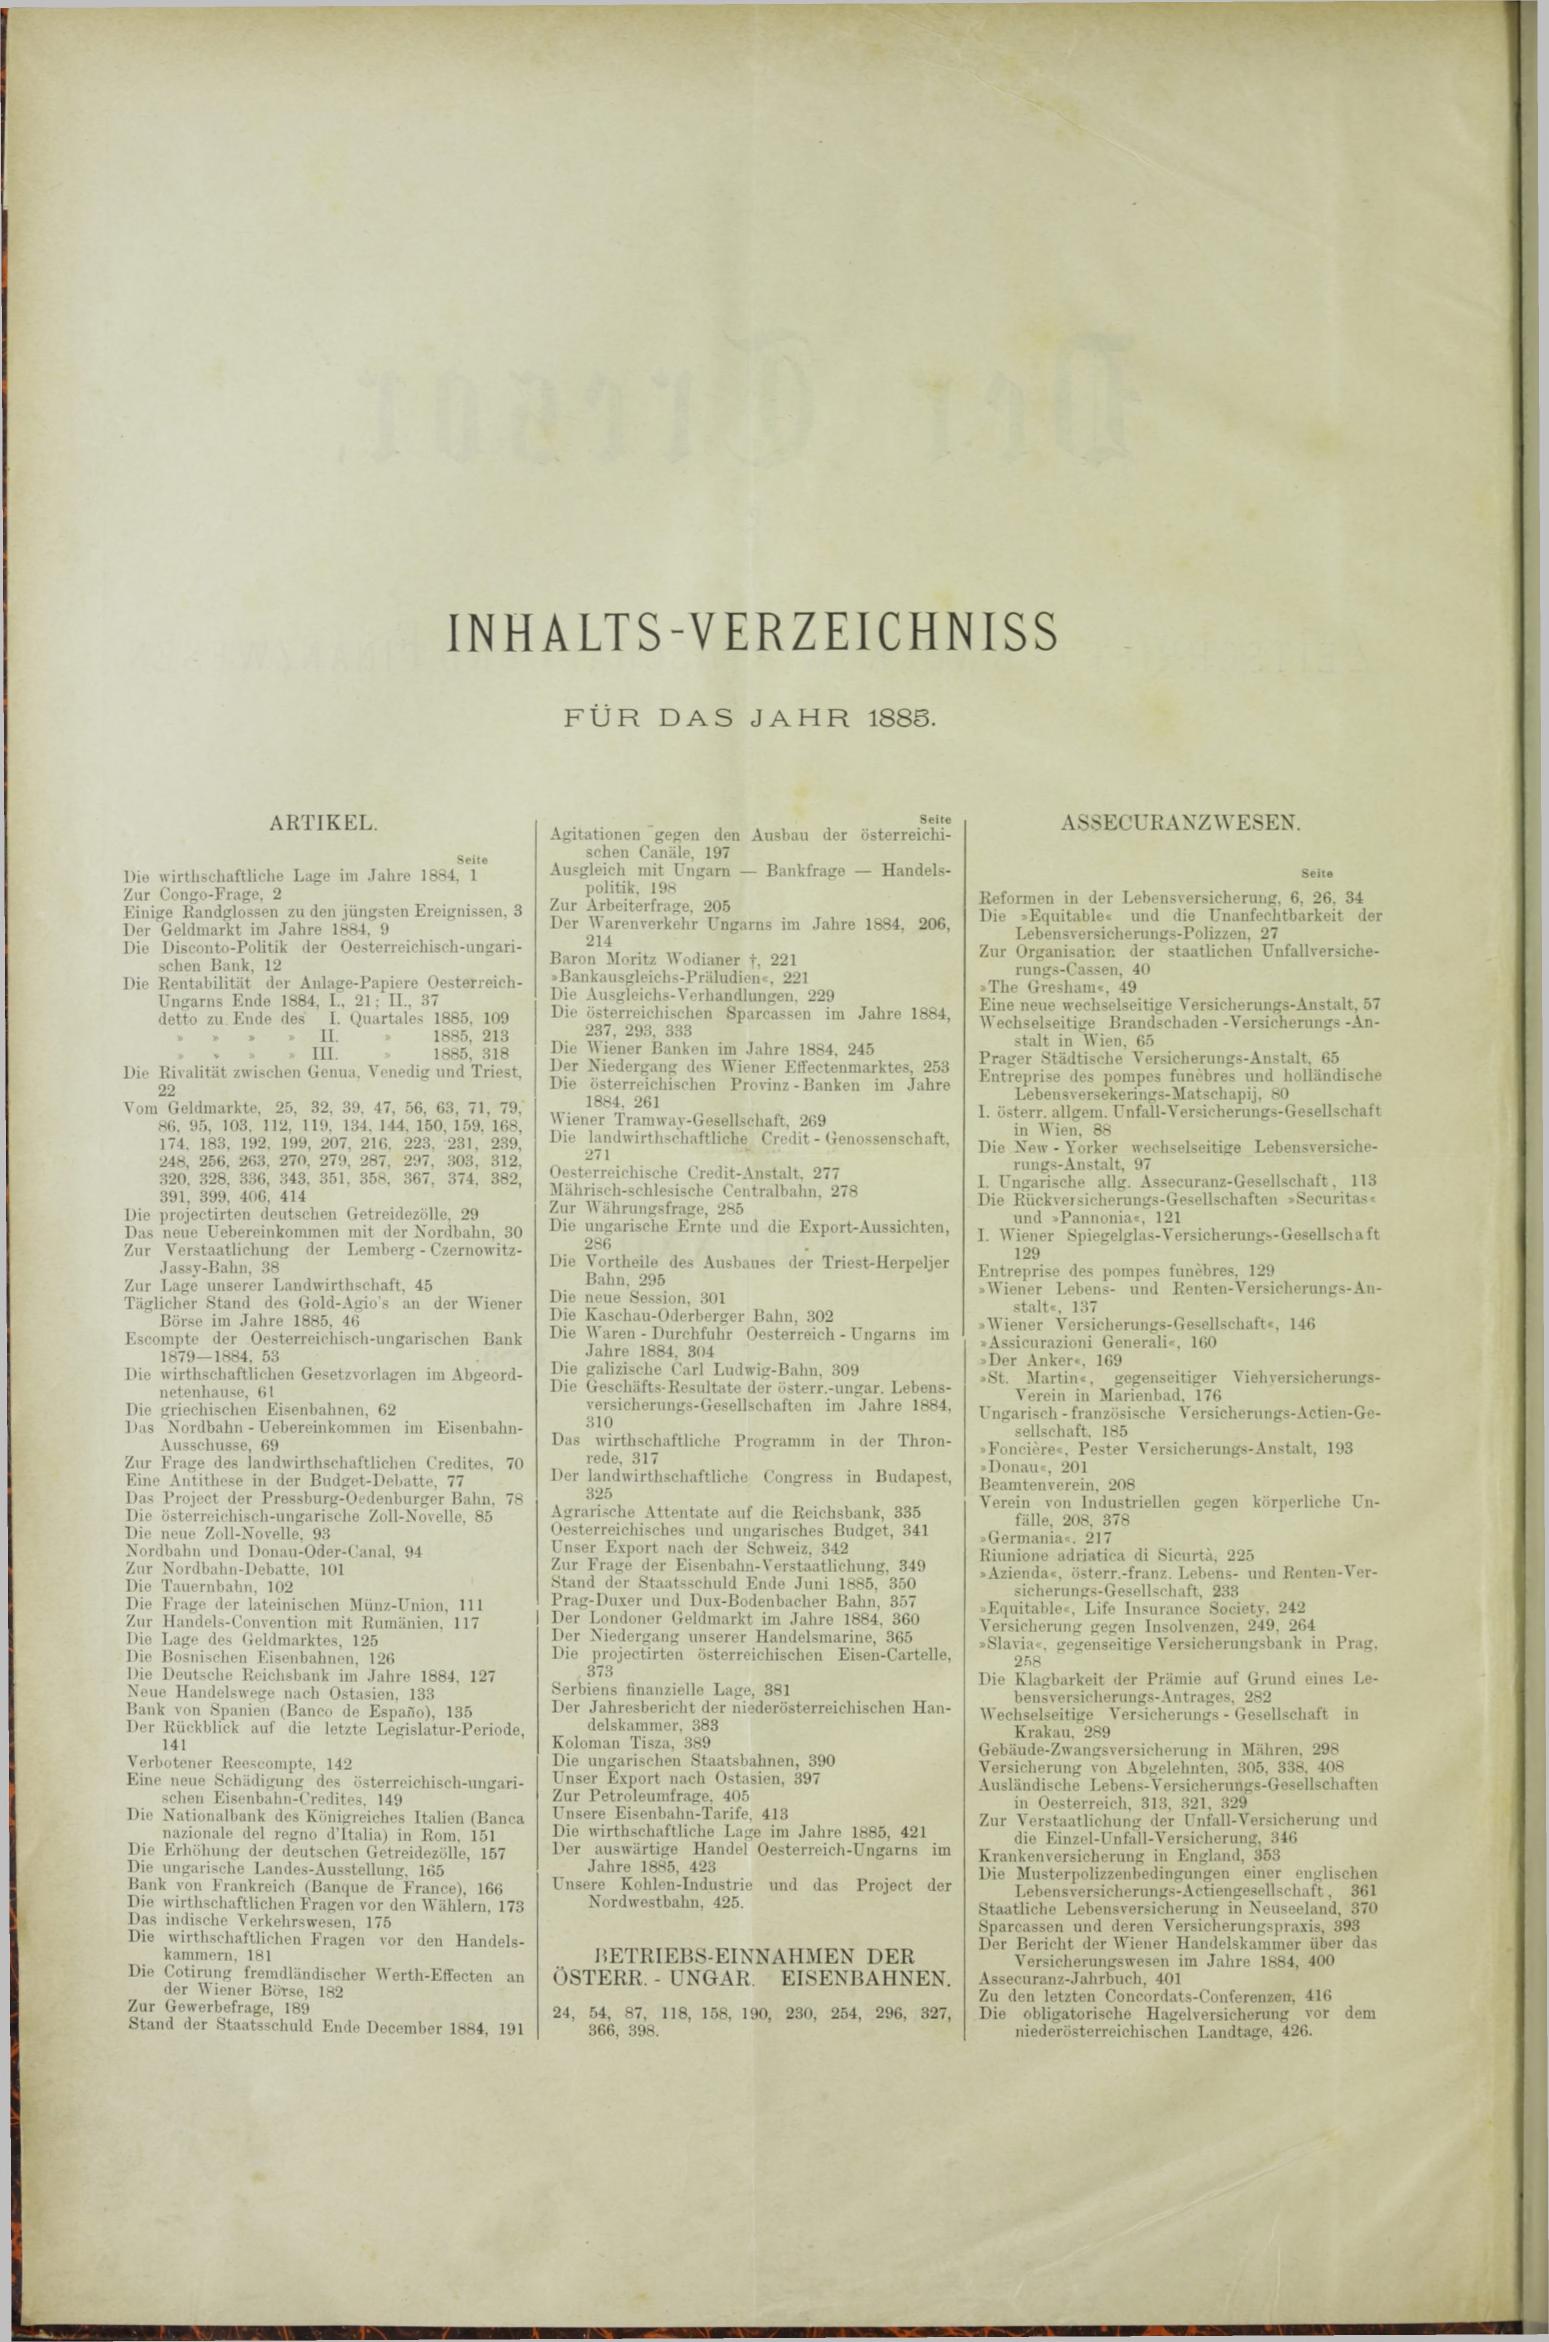 Der Tresor 15.01.1885 - Seite 10